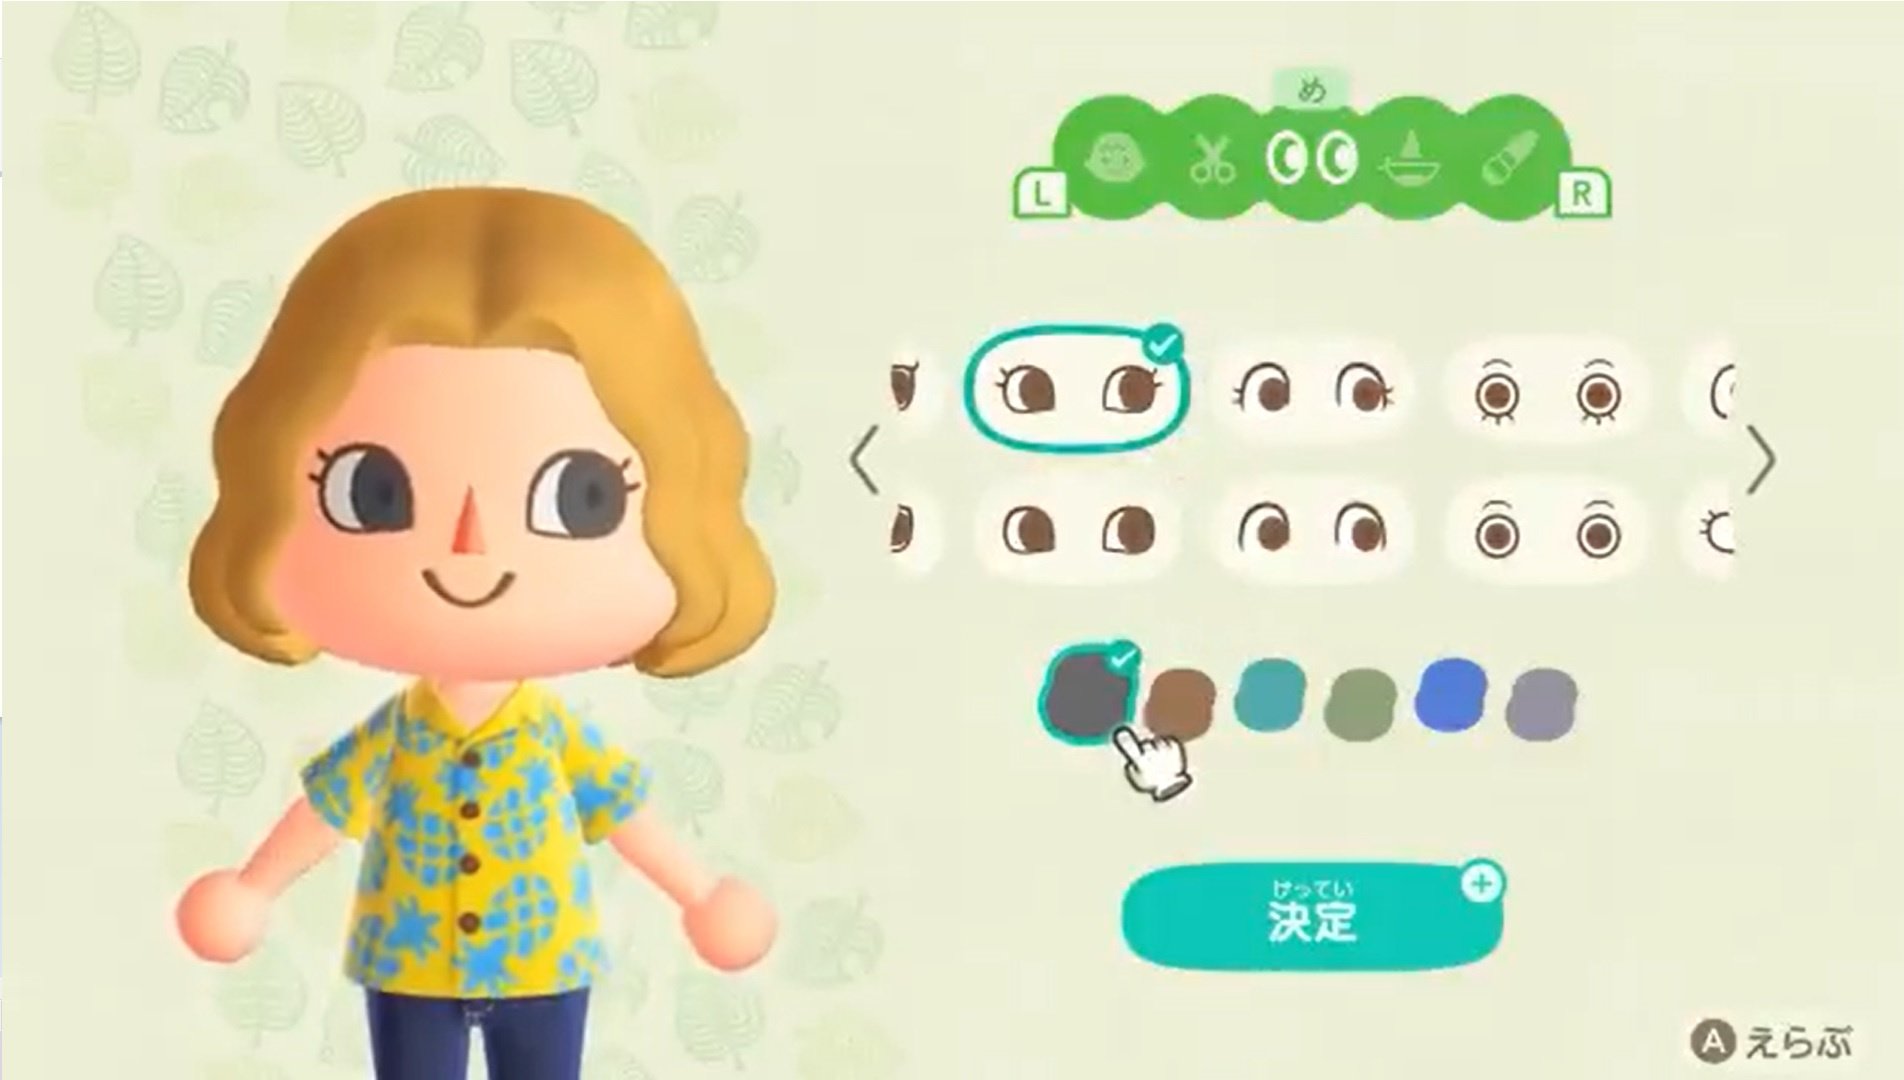 Novos vídeos mostram as opções de customização em Animal Crossing: New Horizons